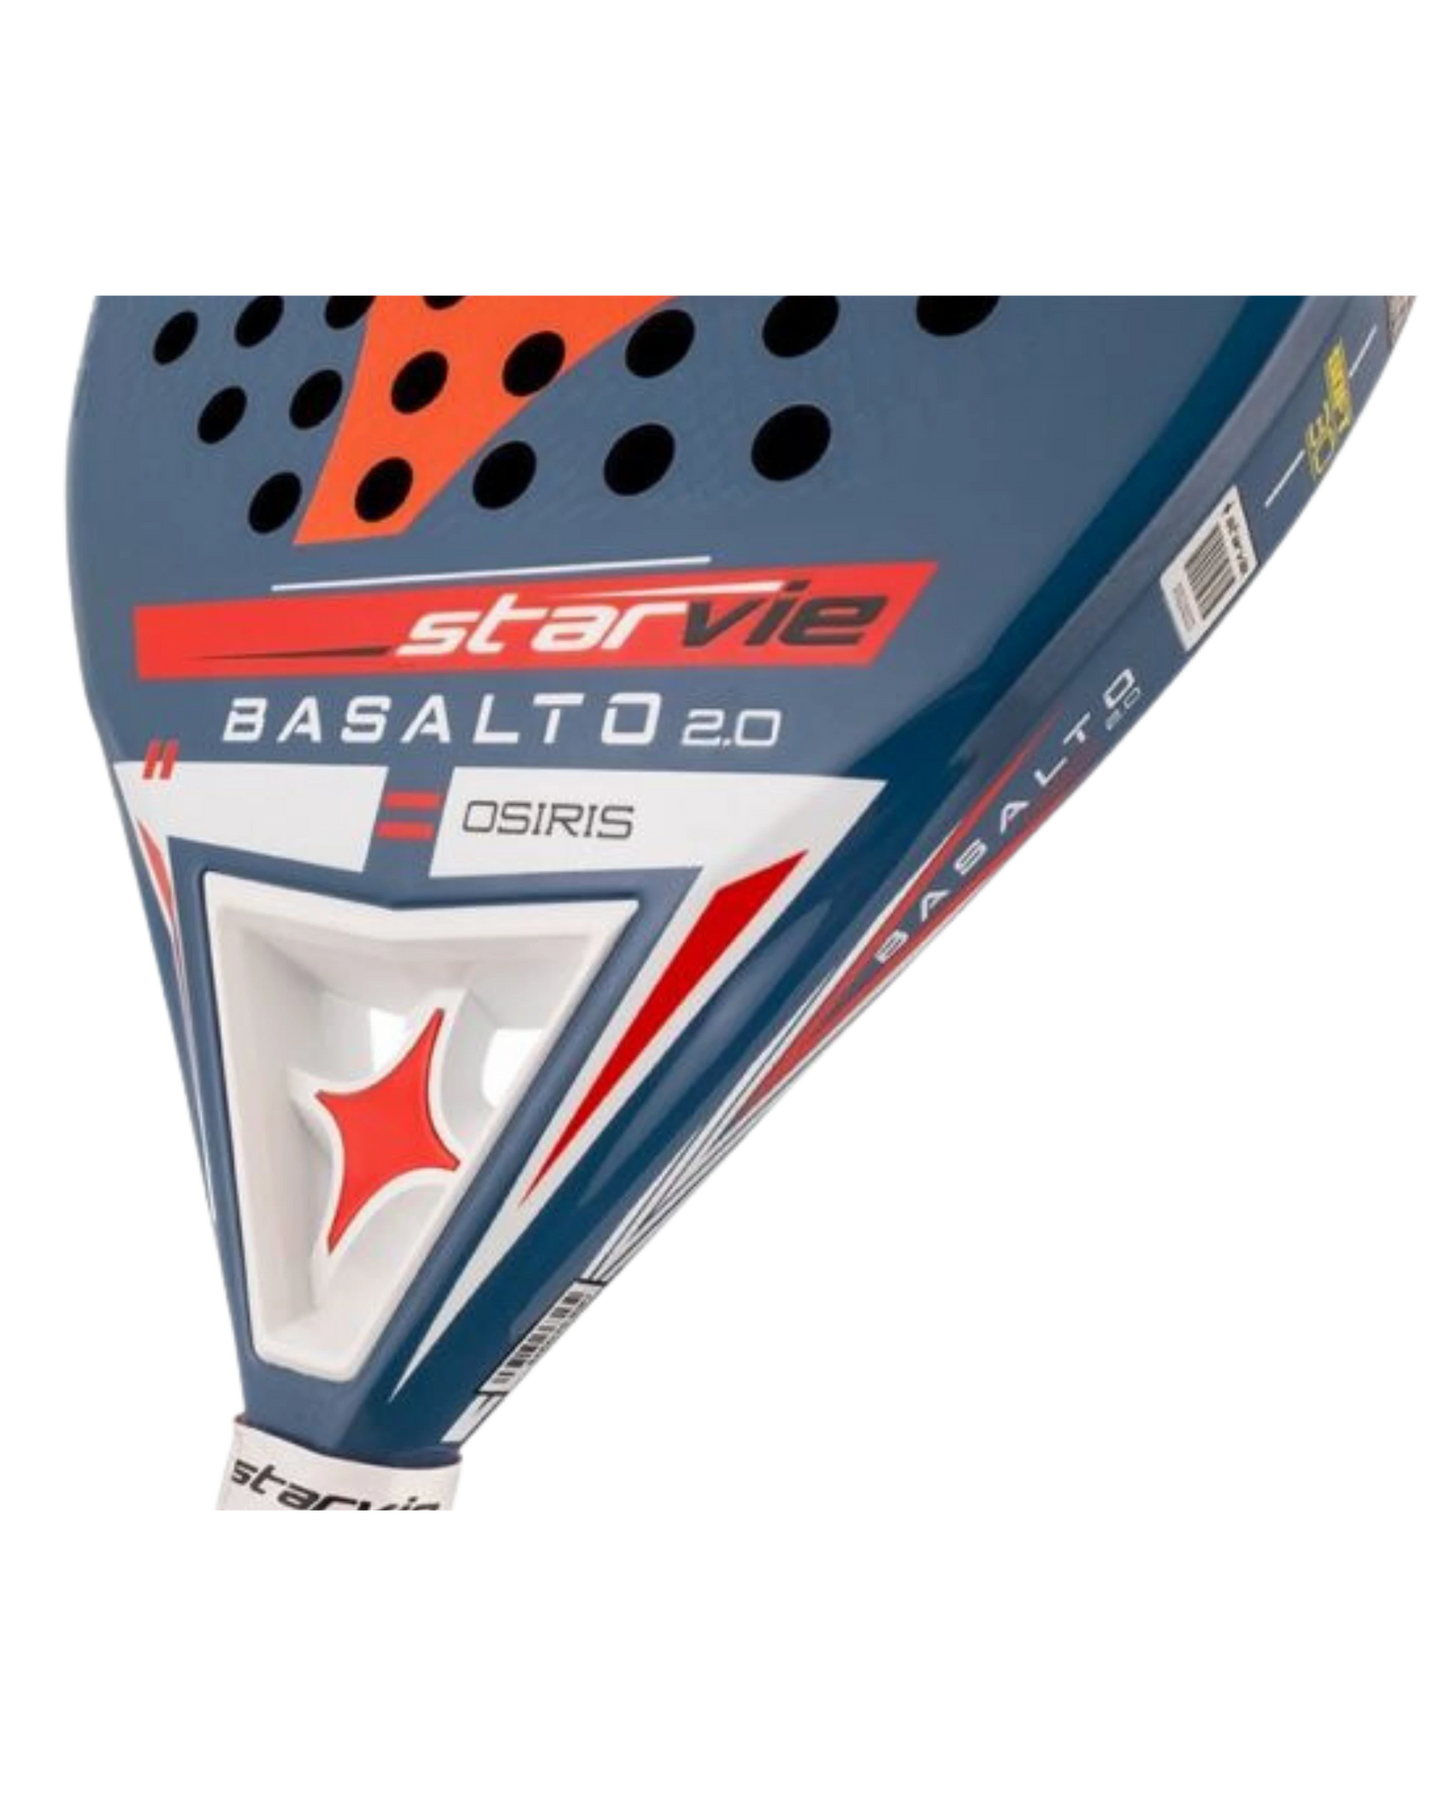 StarVie Basalto Osiris 2.0